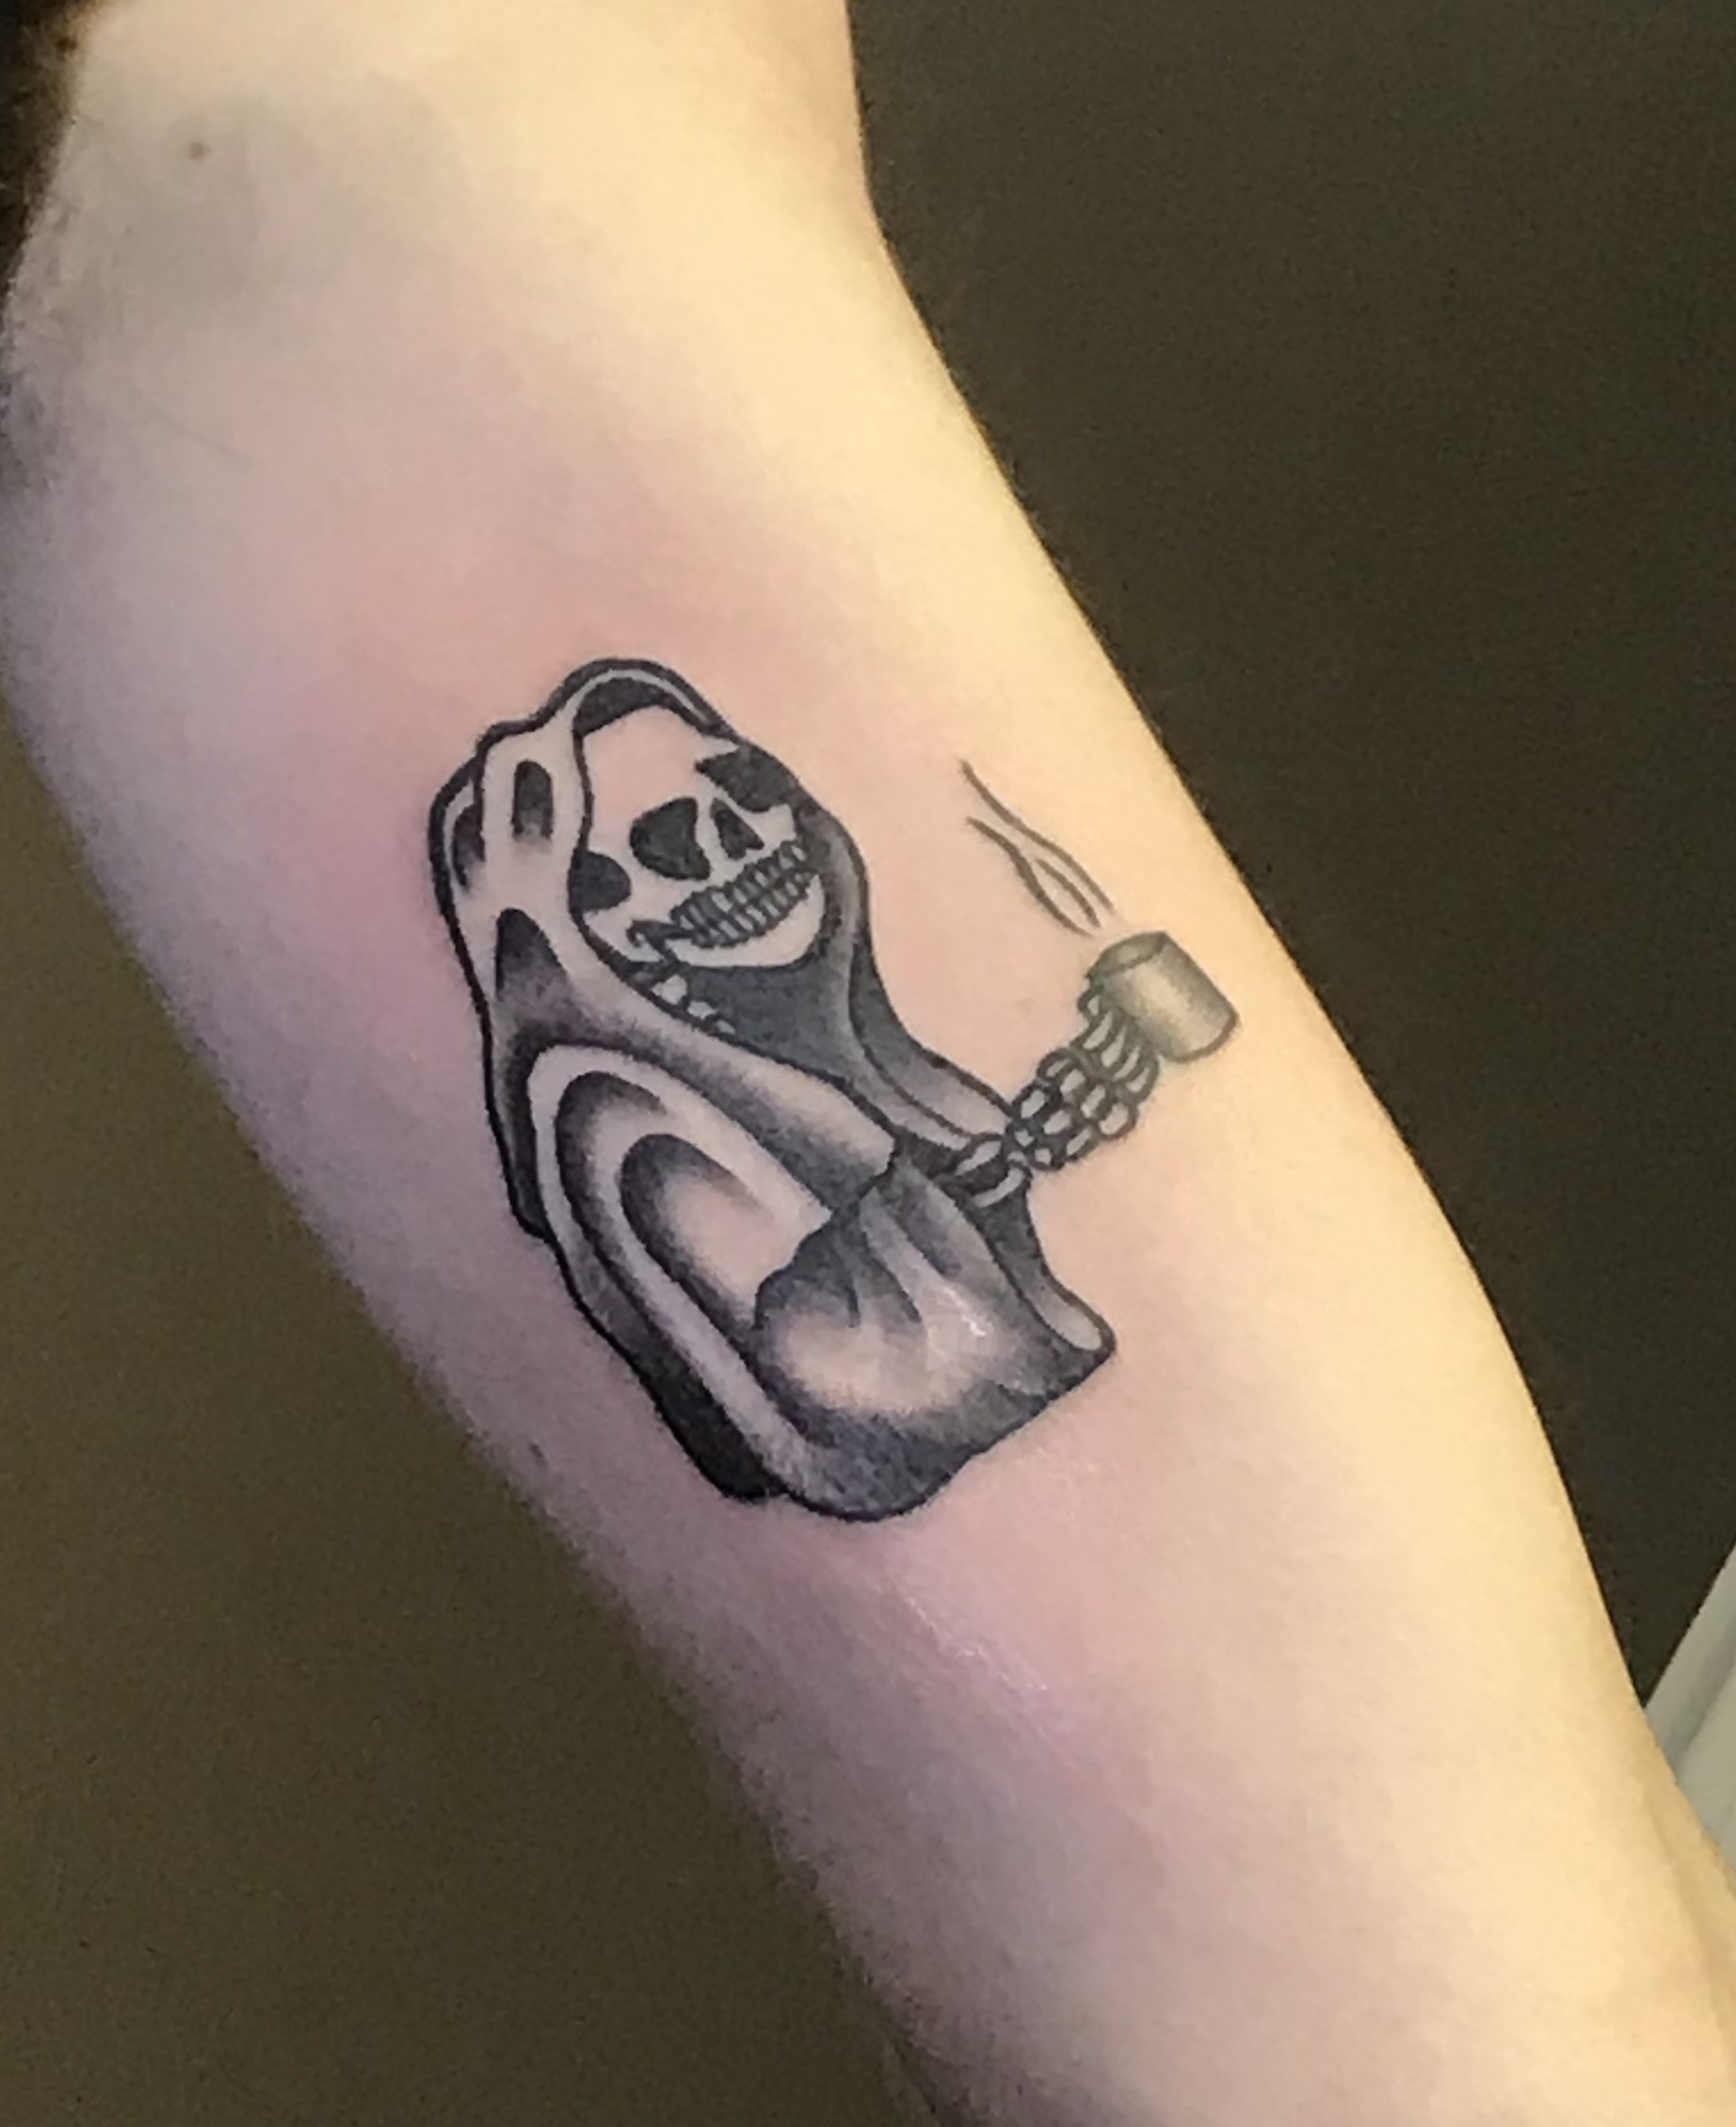 Grim reaper needs coffee too tattoo